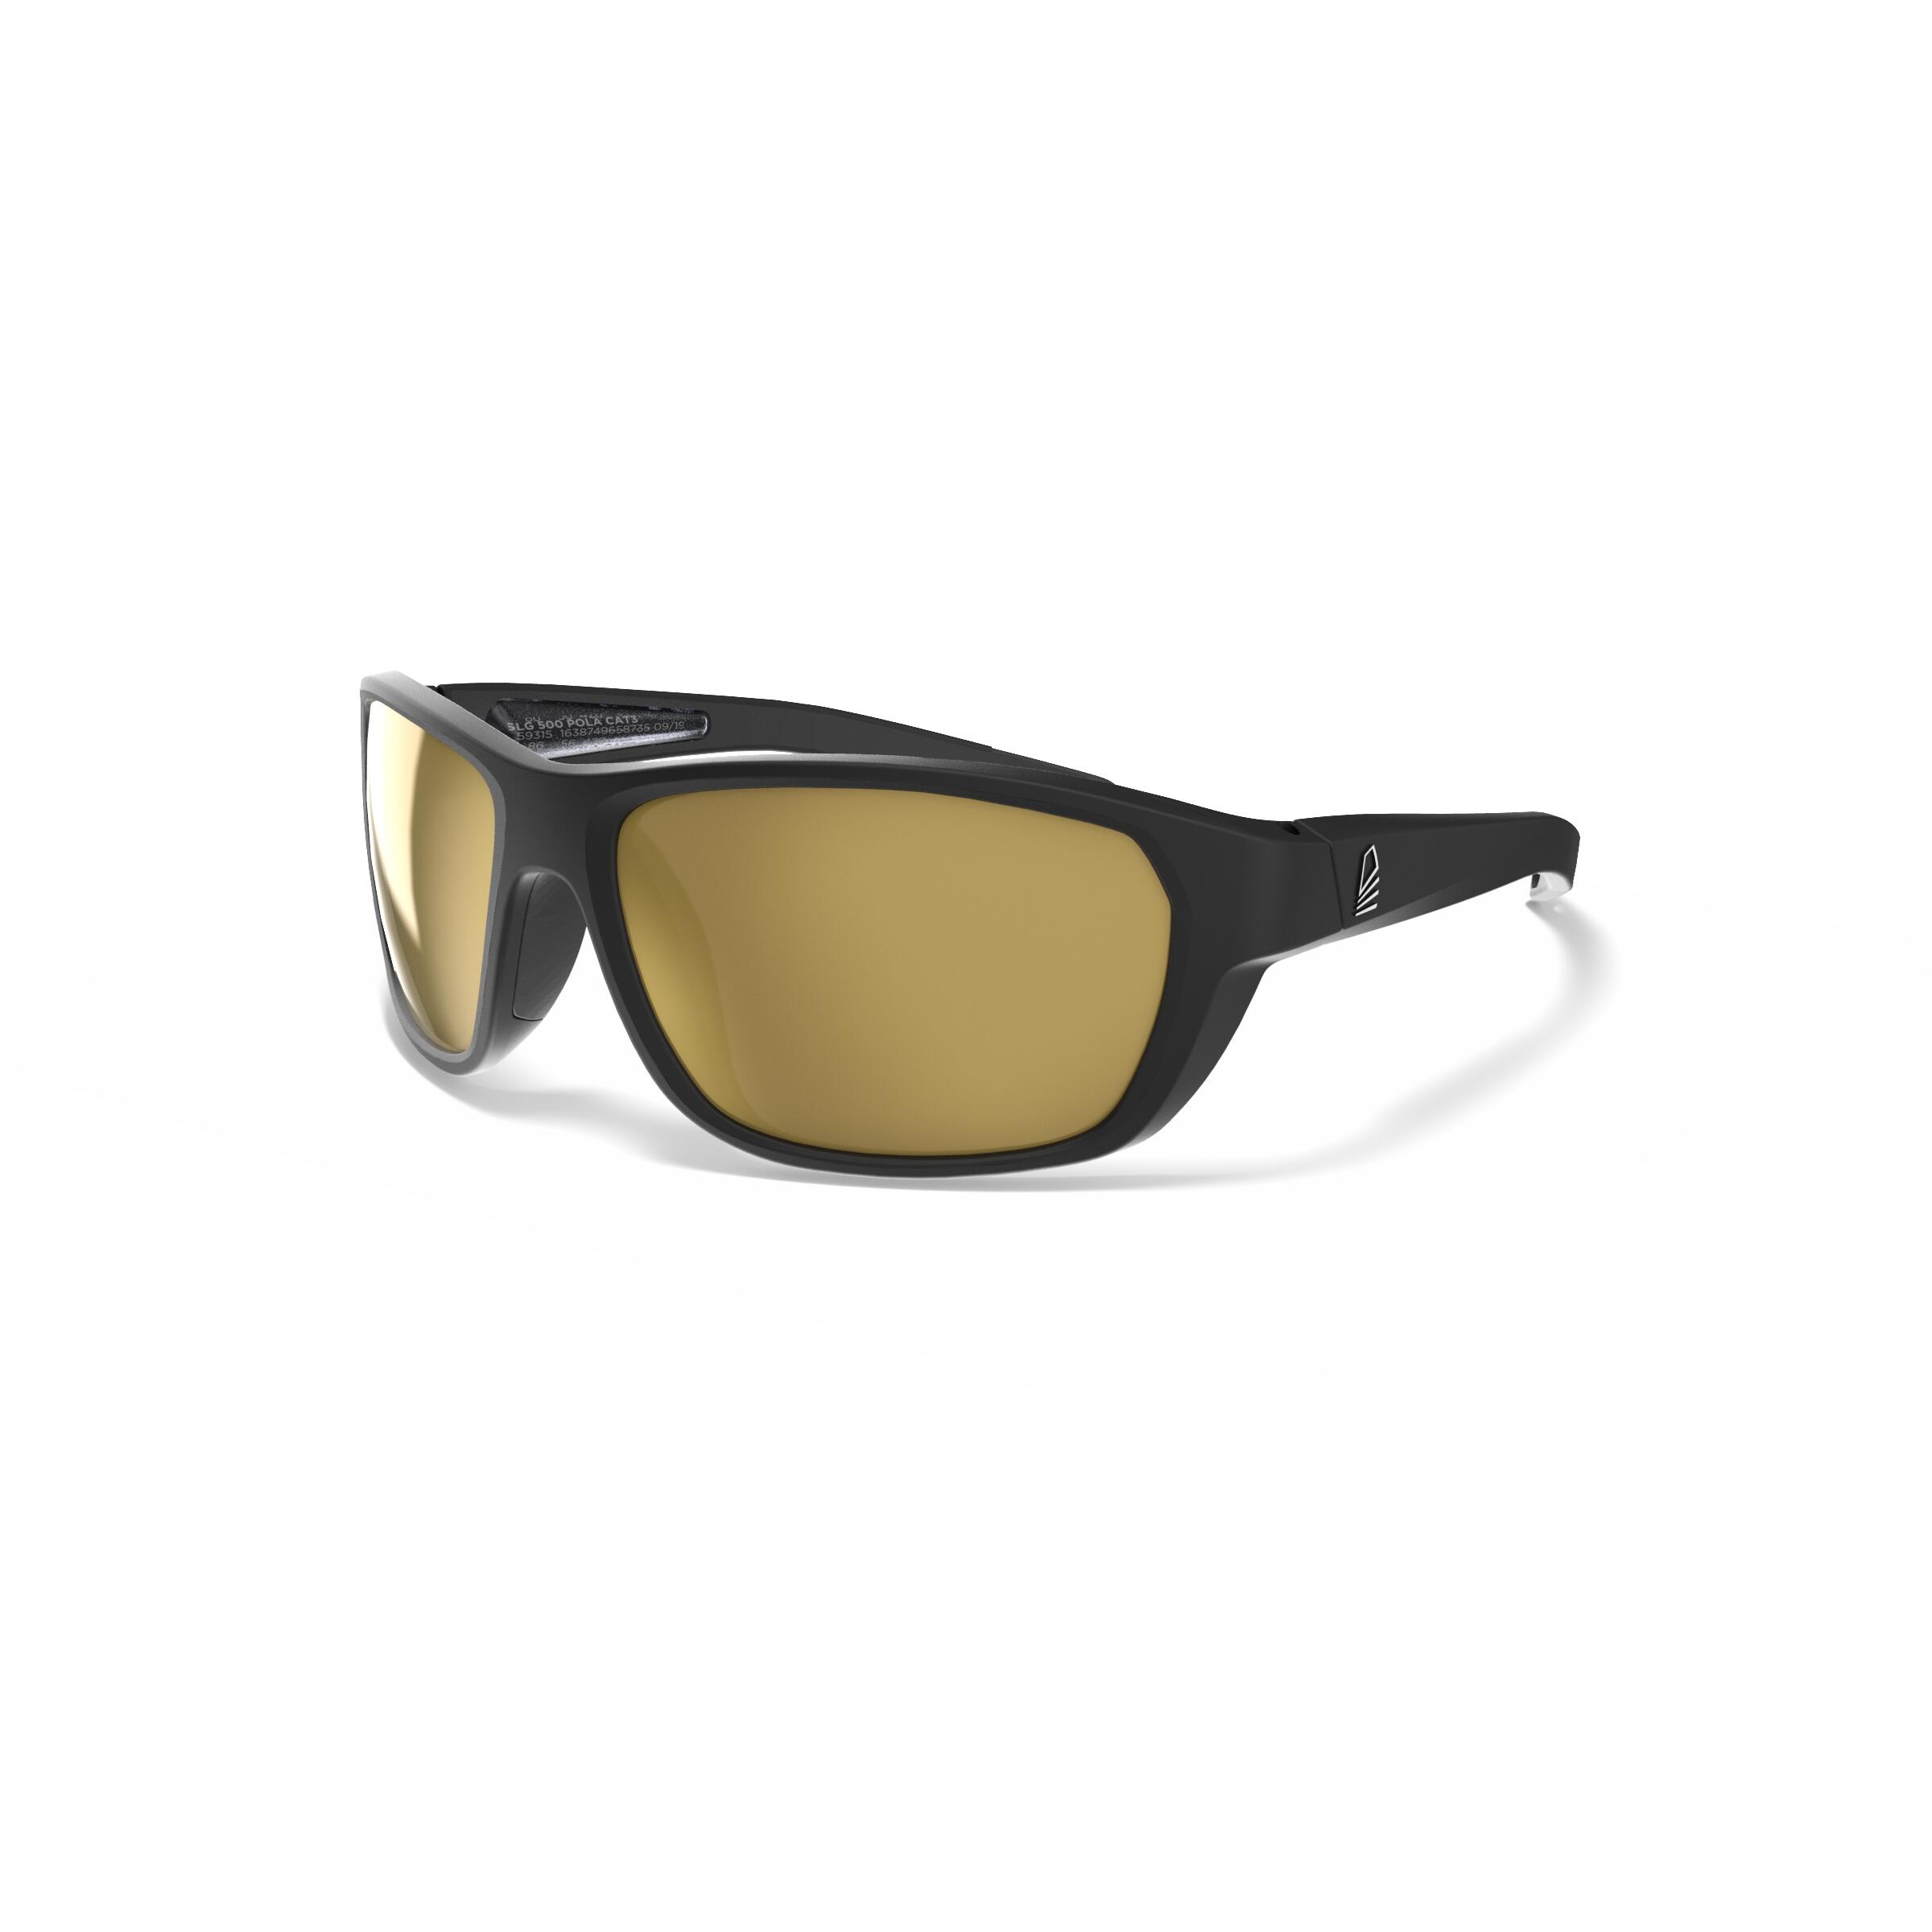 TRIBORD Sonnenbrille Segeln Damen/Herren polarisierend schwimmfähig 500 Grösse S schwarz/gold EINHEITSGRÖSSE